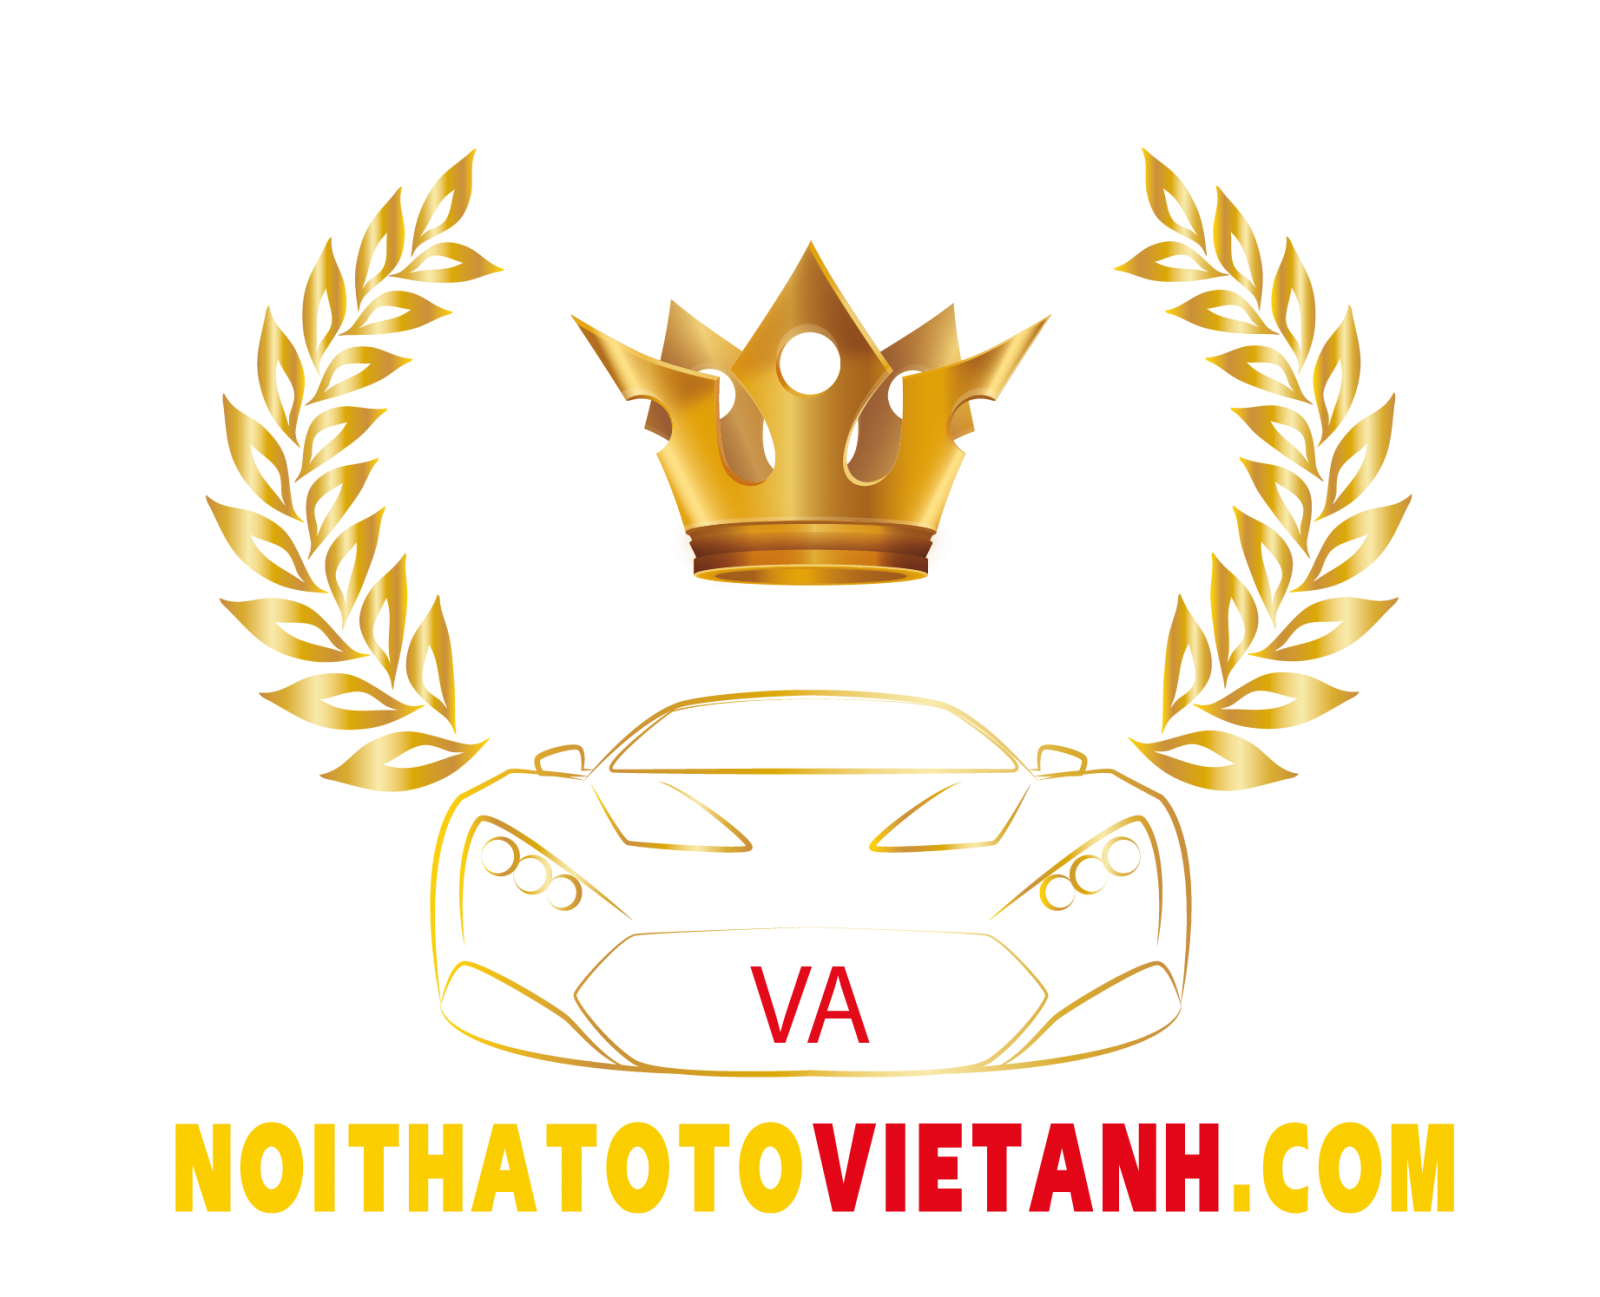 Mừng khai trương Việt Anh Auto Hải Phòng - Cơ sở độ xe chuyên nghiệp, uy tín hàng đầu Việt Nam